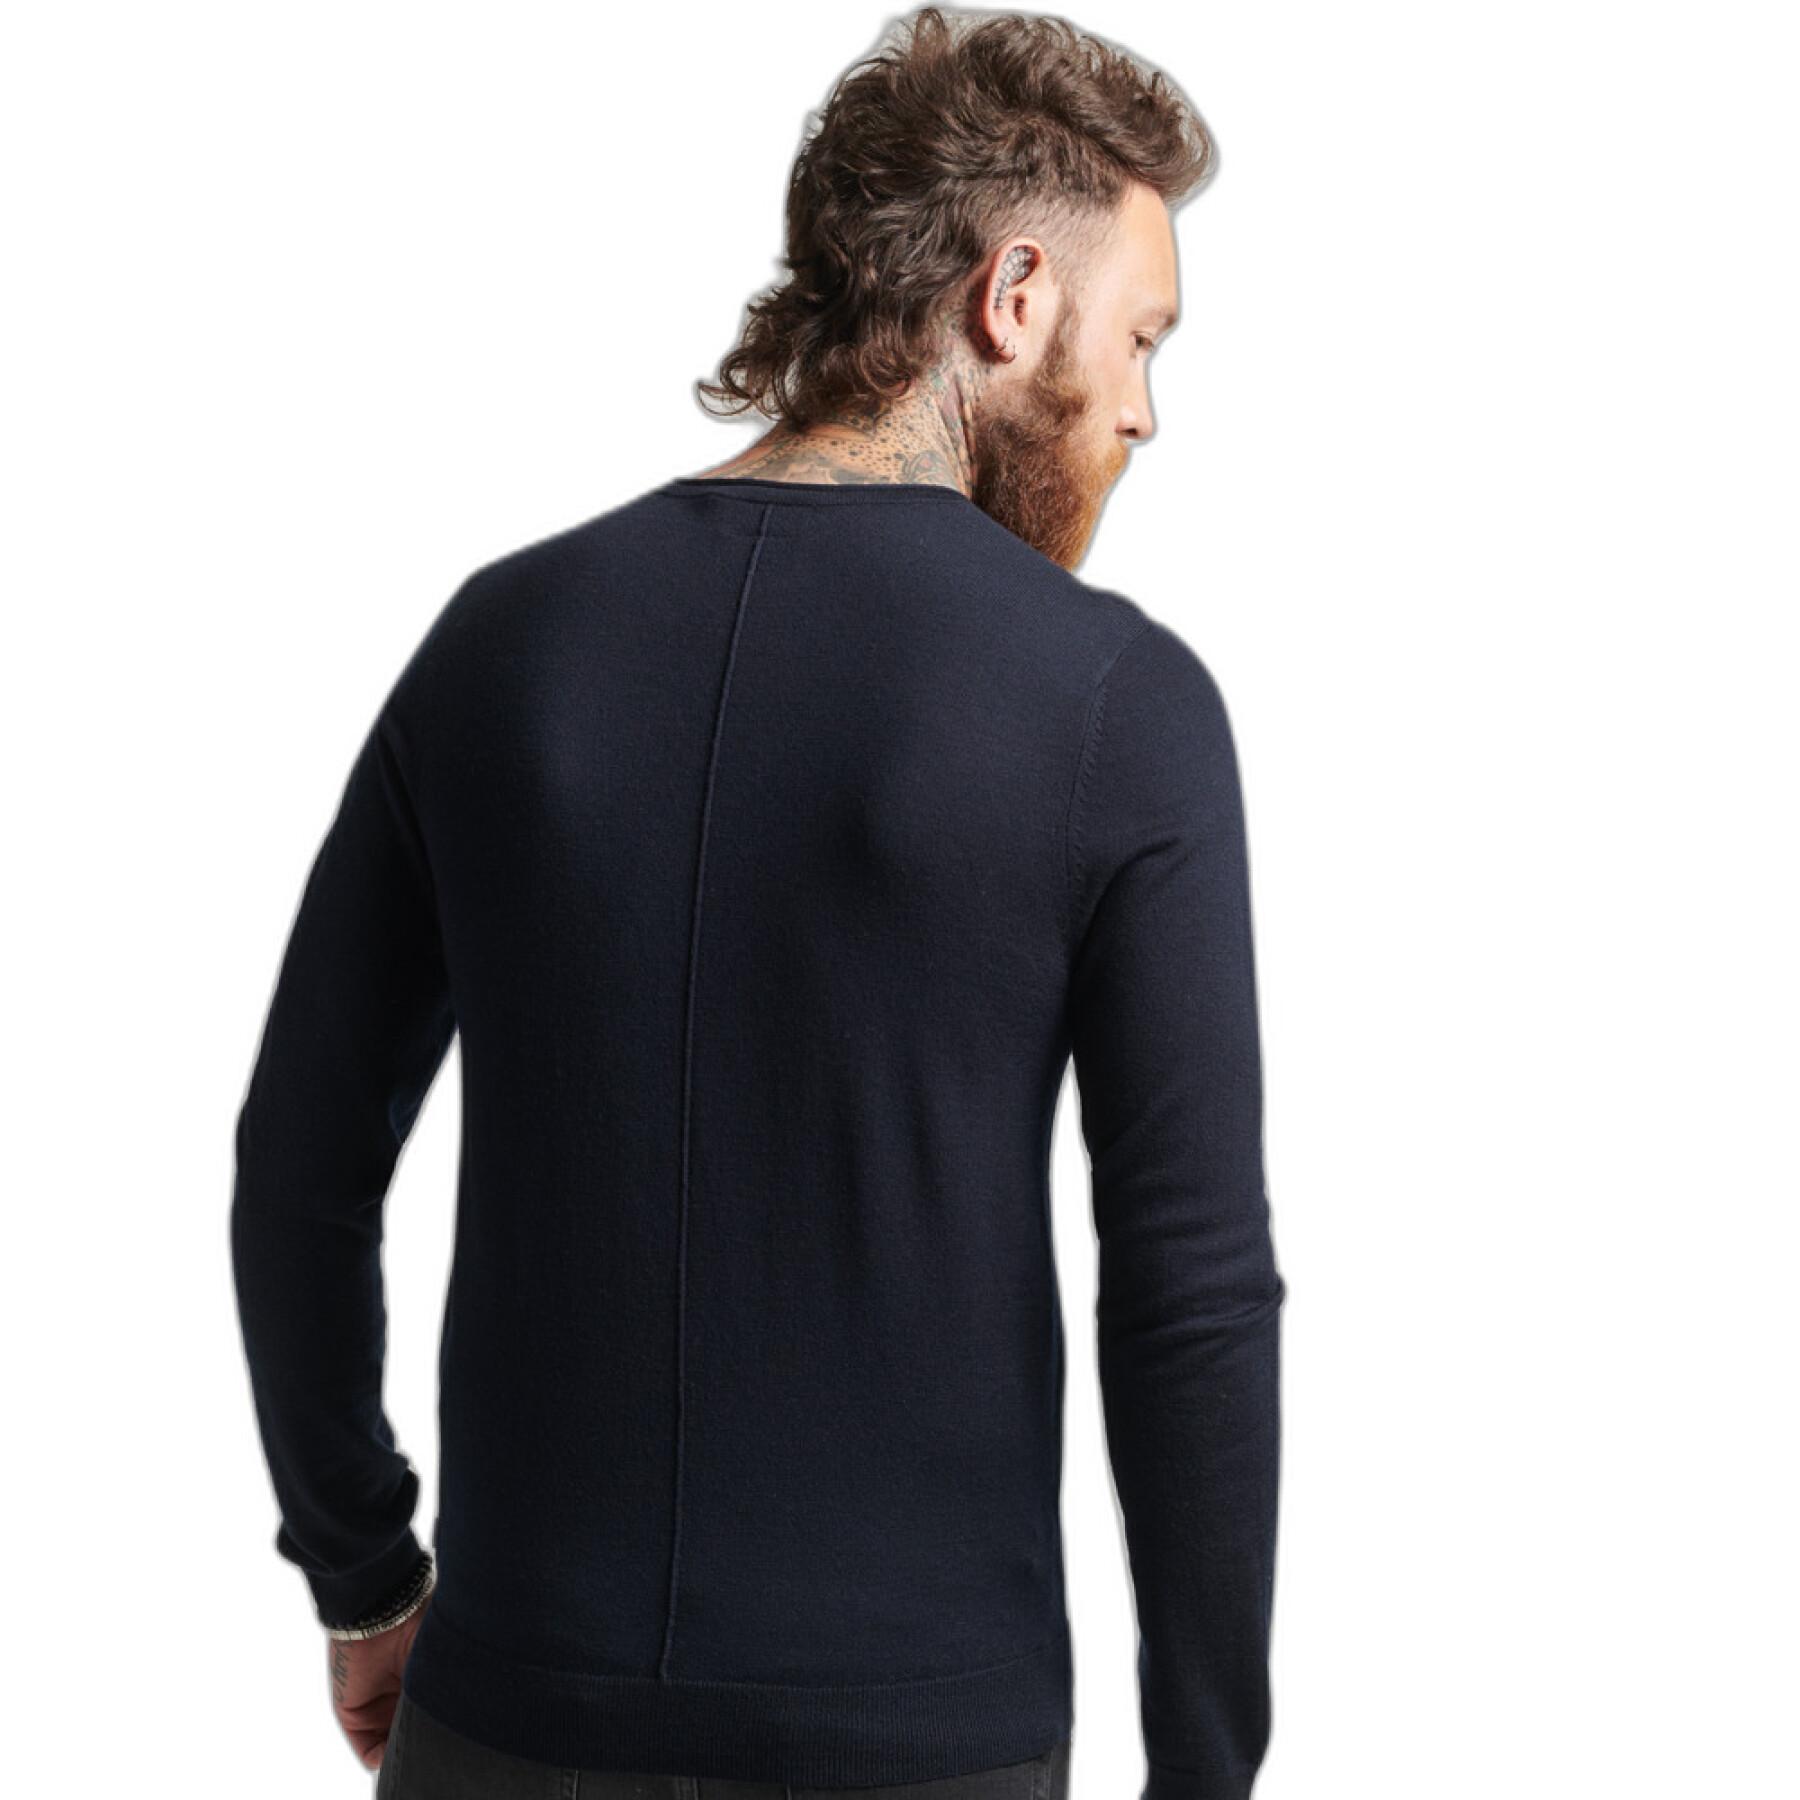 Camiseta de lana merina con cuello redondo tunecino Superdry